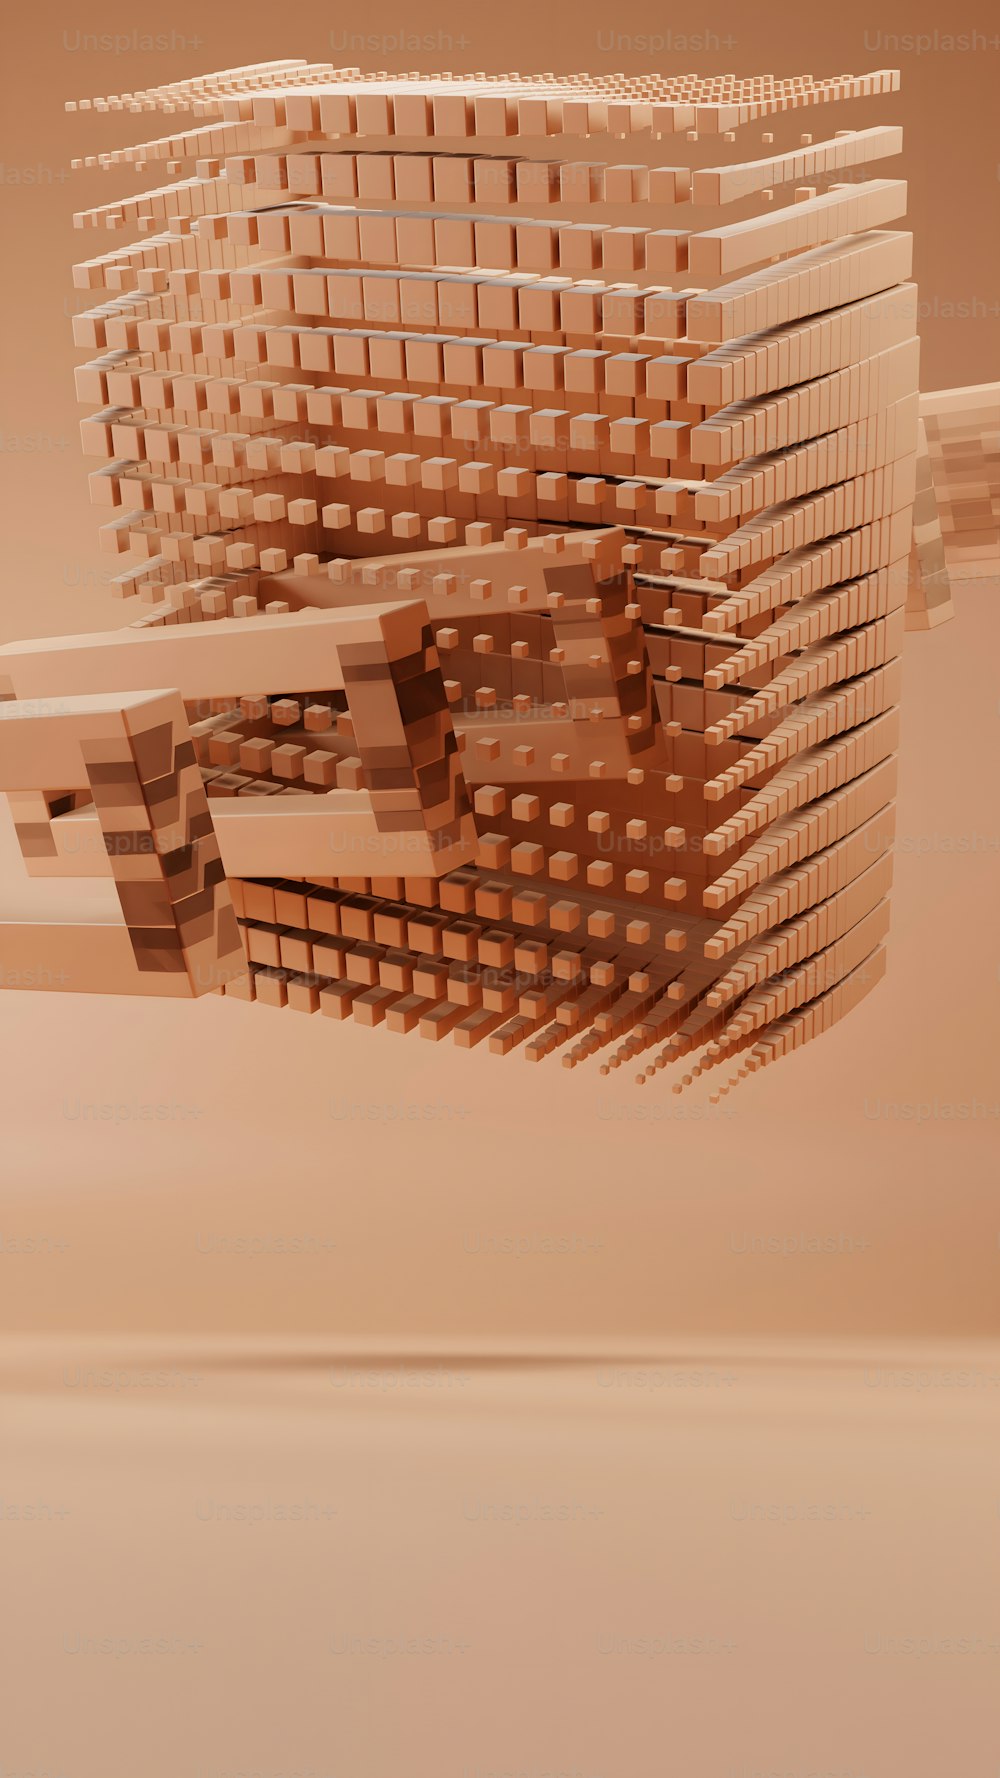 Una foto abstracta de un edificio hecho de cuadrados